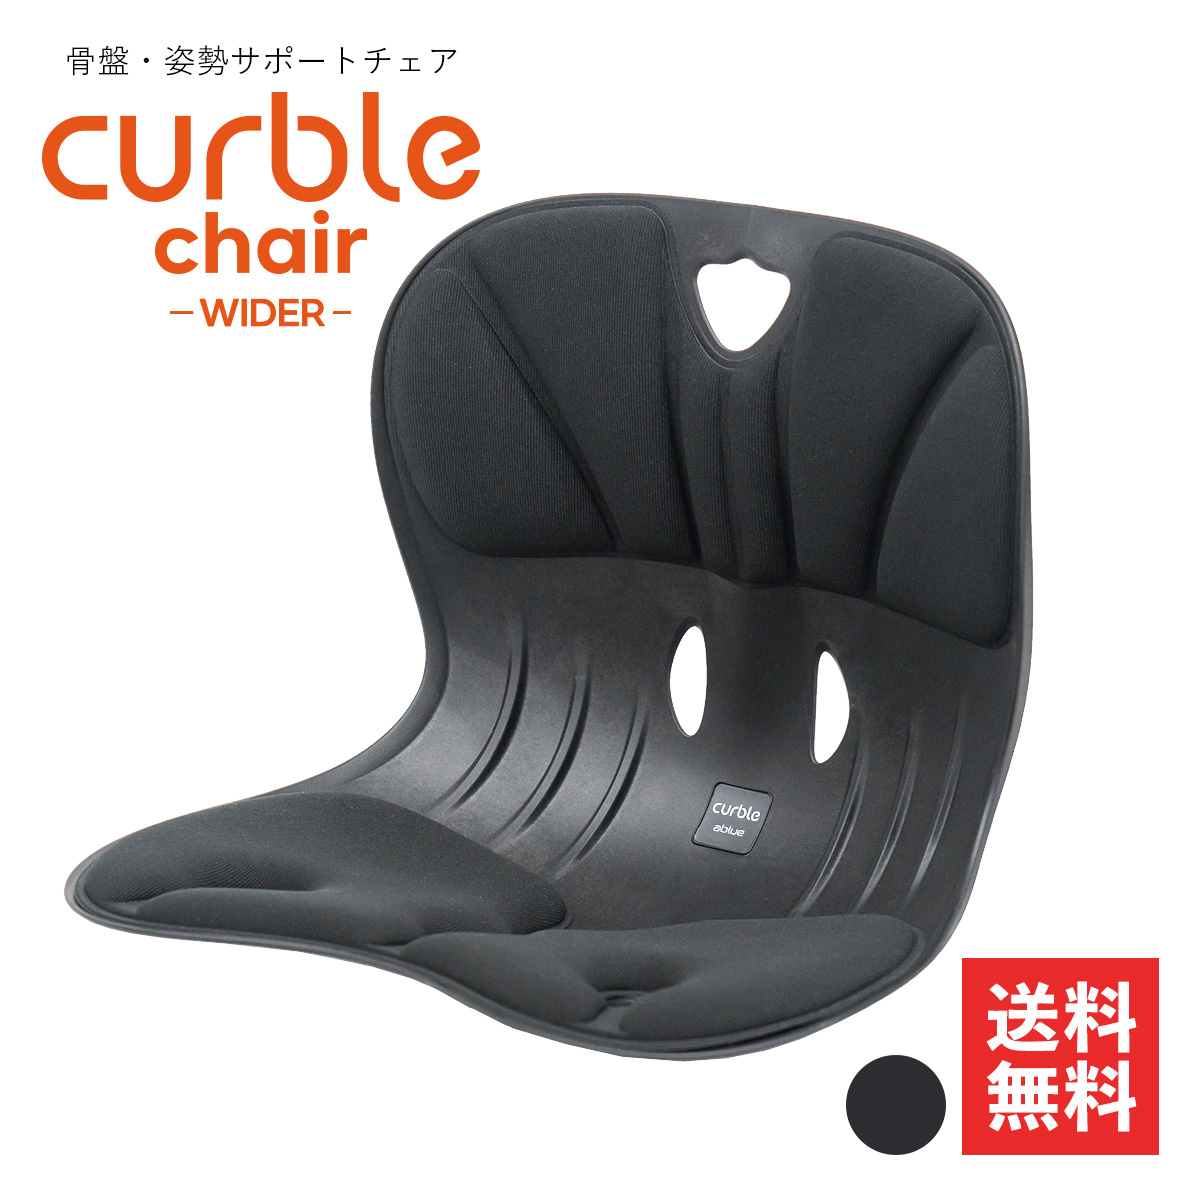 カーブルチェアワイド Curble Chair Widerブラック 2点セット